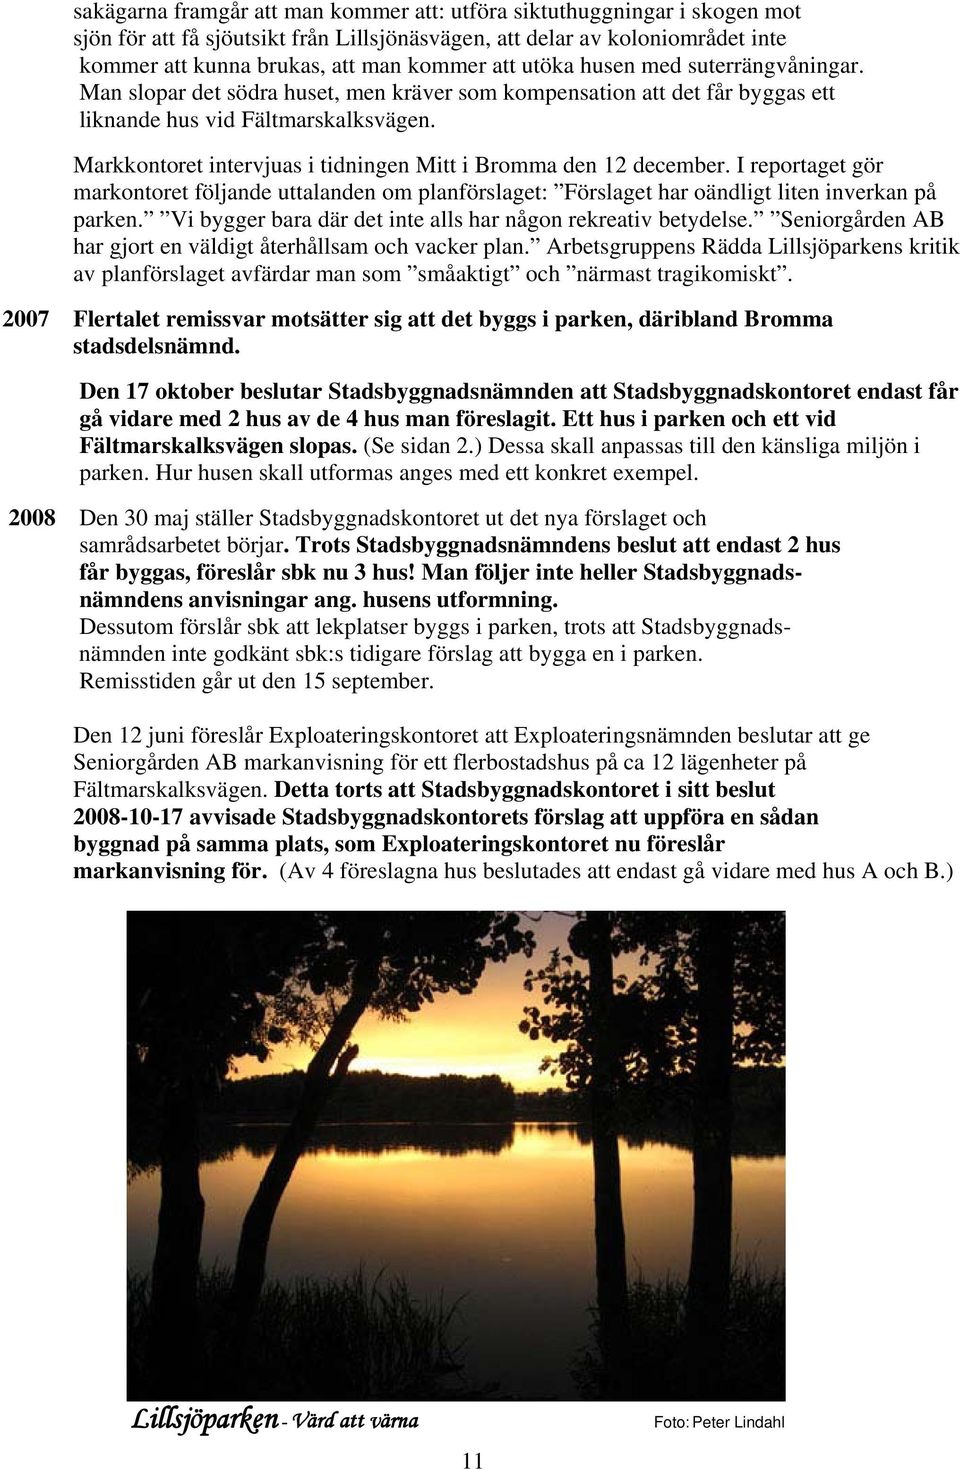 Markkontoret intervjuas i tidningen Mitt i Bromma den 12 december. I reportaget gör markontoret följande uttalanden om planförslaget: Förslaget har oändligt liten inverkan på parken.